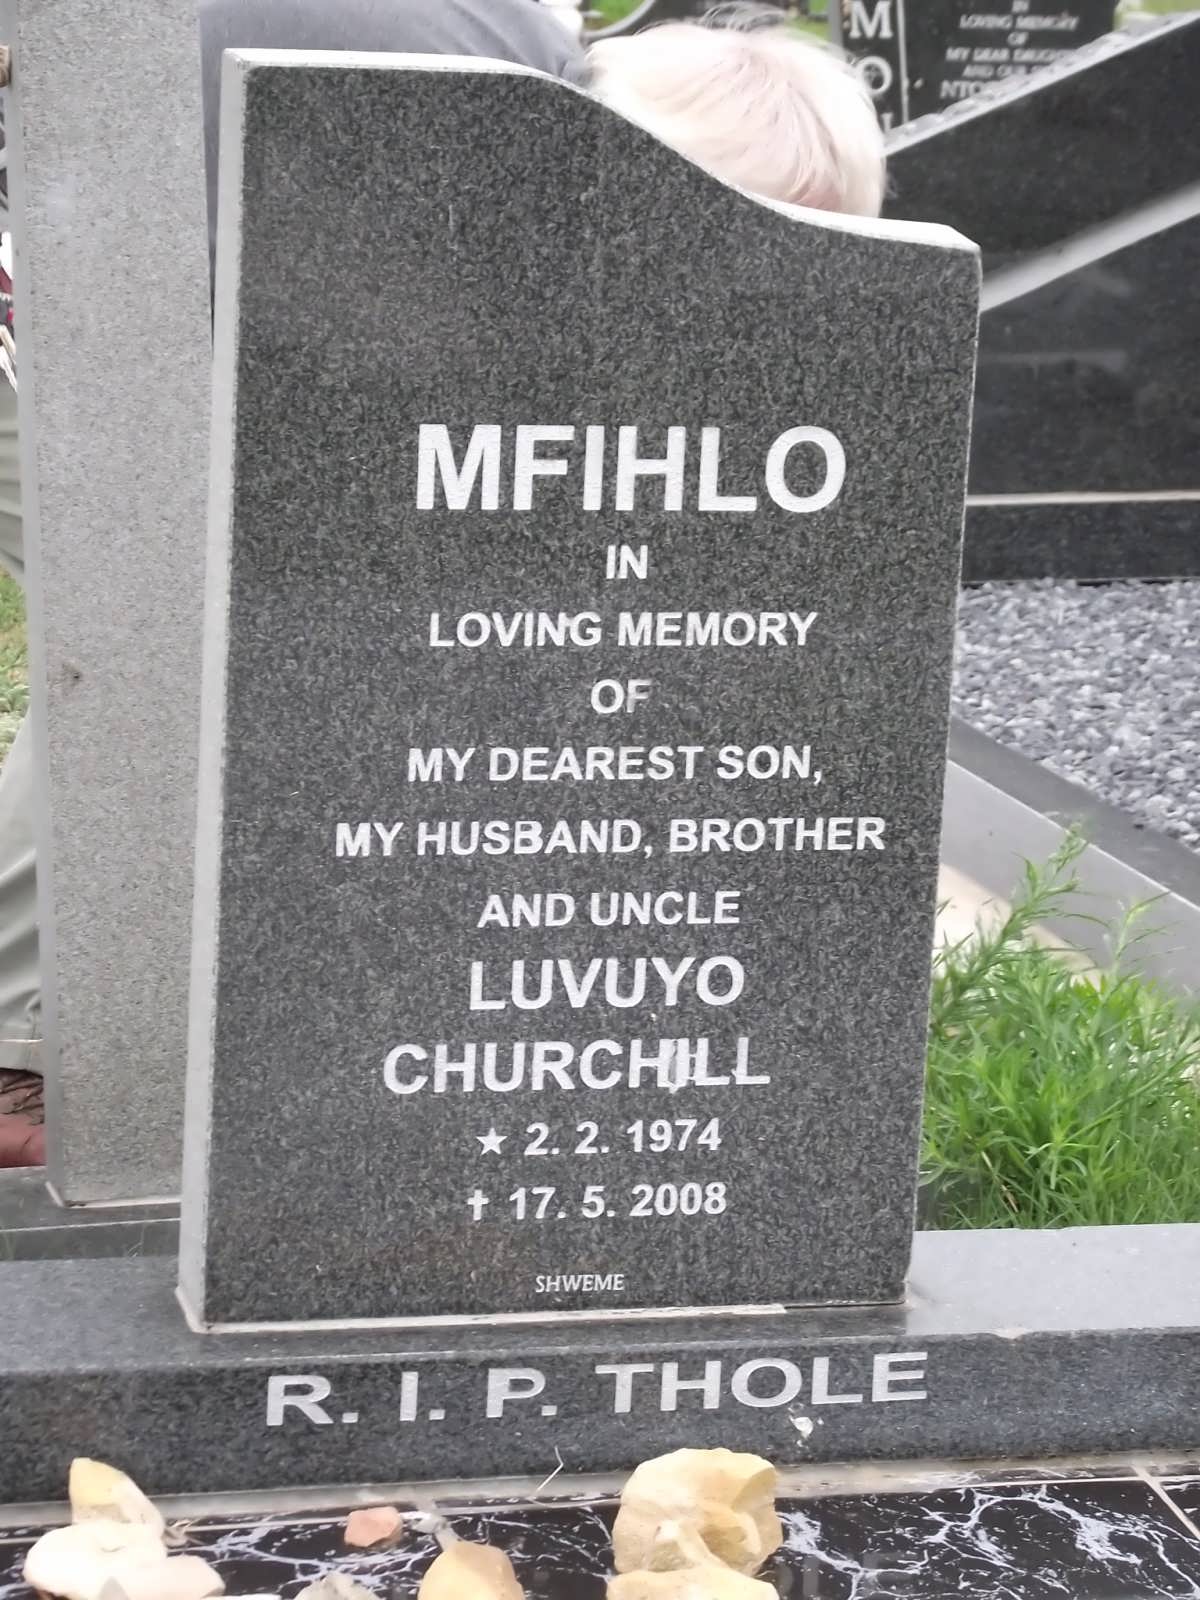 MFIHLO Luvuyo Churchill 1974-2008